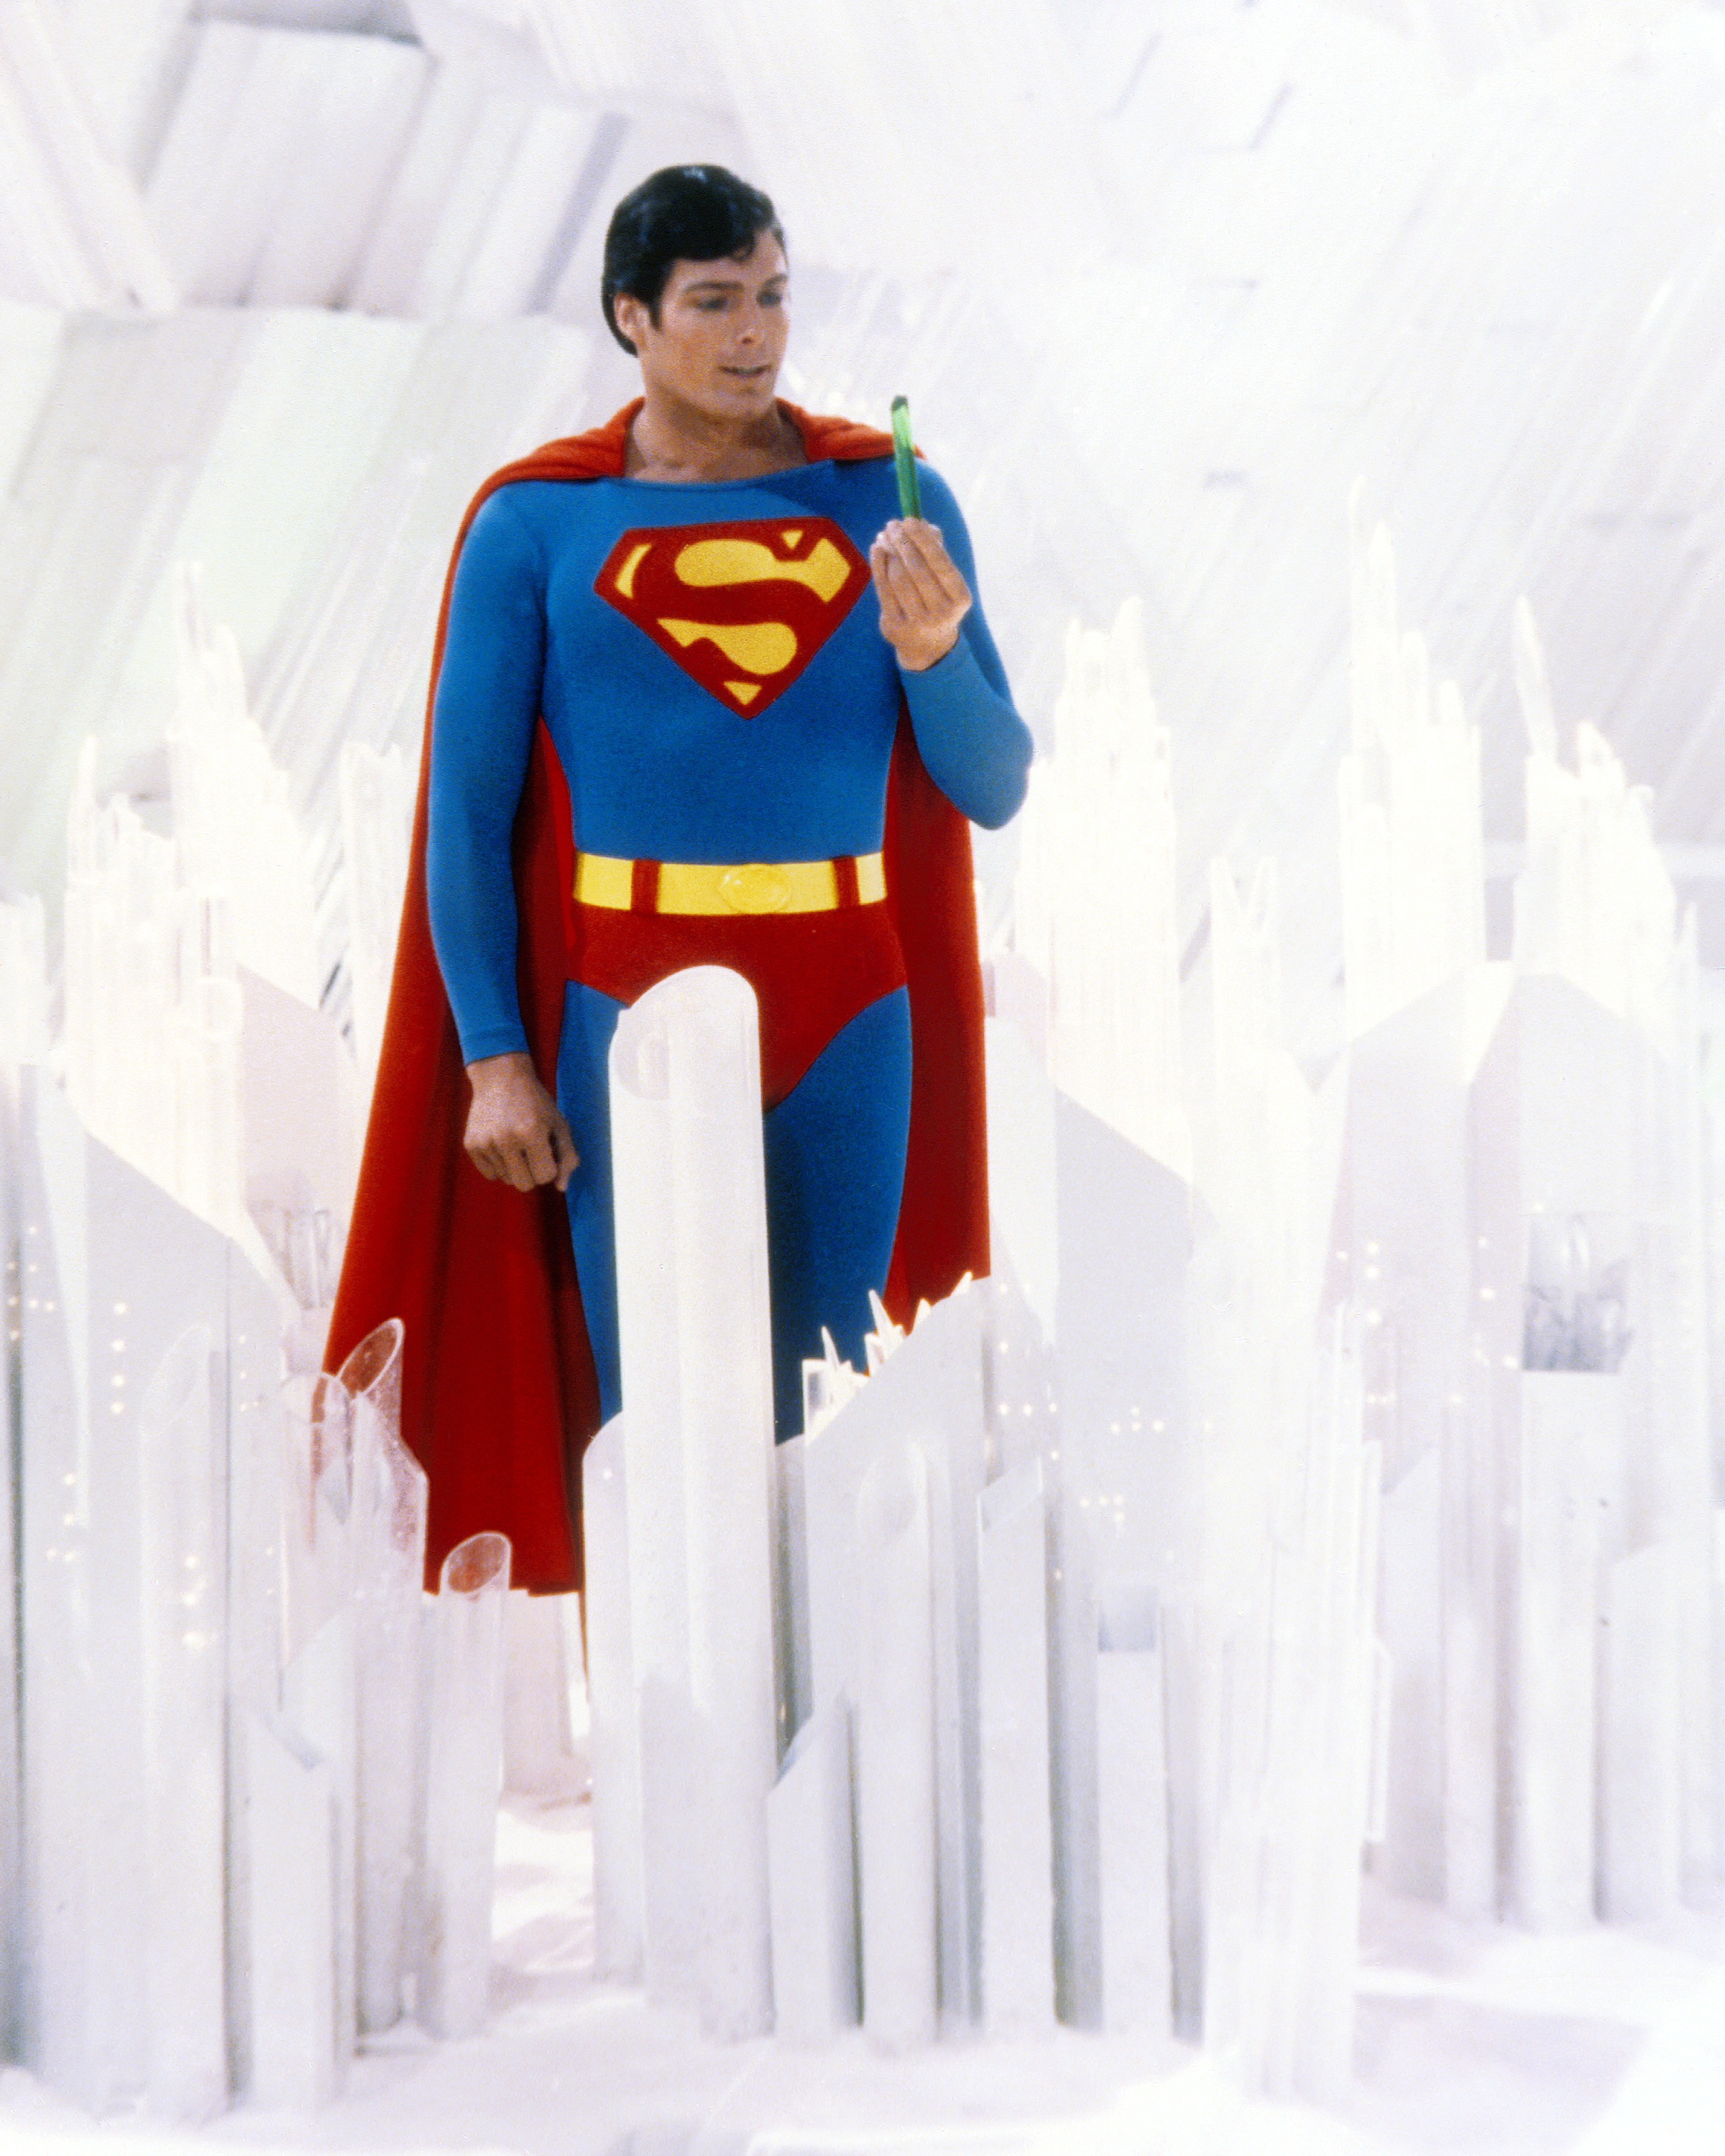 Superman, interprété par l'acteur américain Christopher Reeve, tient un cristal vert à la Forteresse de Solitude dans une photo promotionnelle de "Superman "1978 | Source : Getty Images